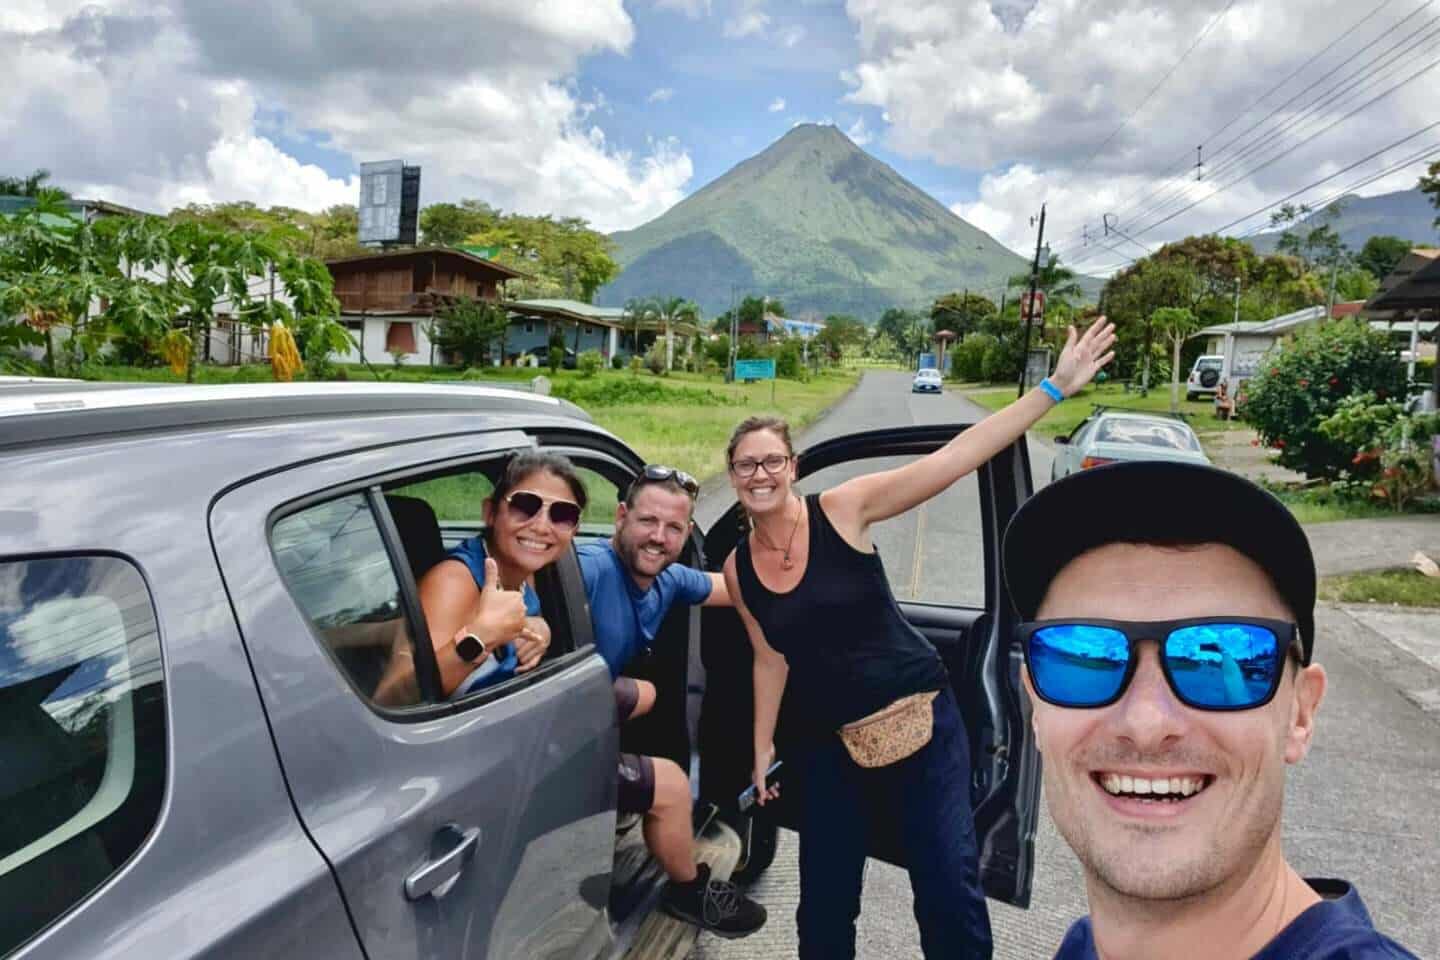 Renting a car in Costa Rica